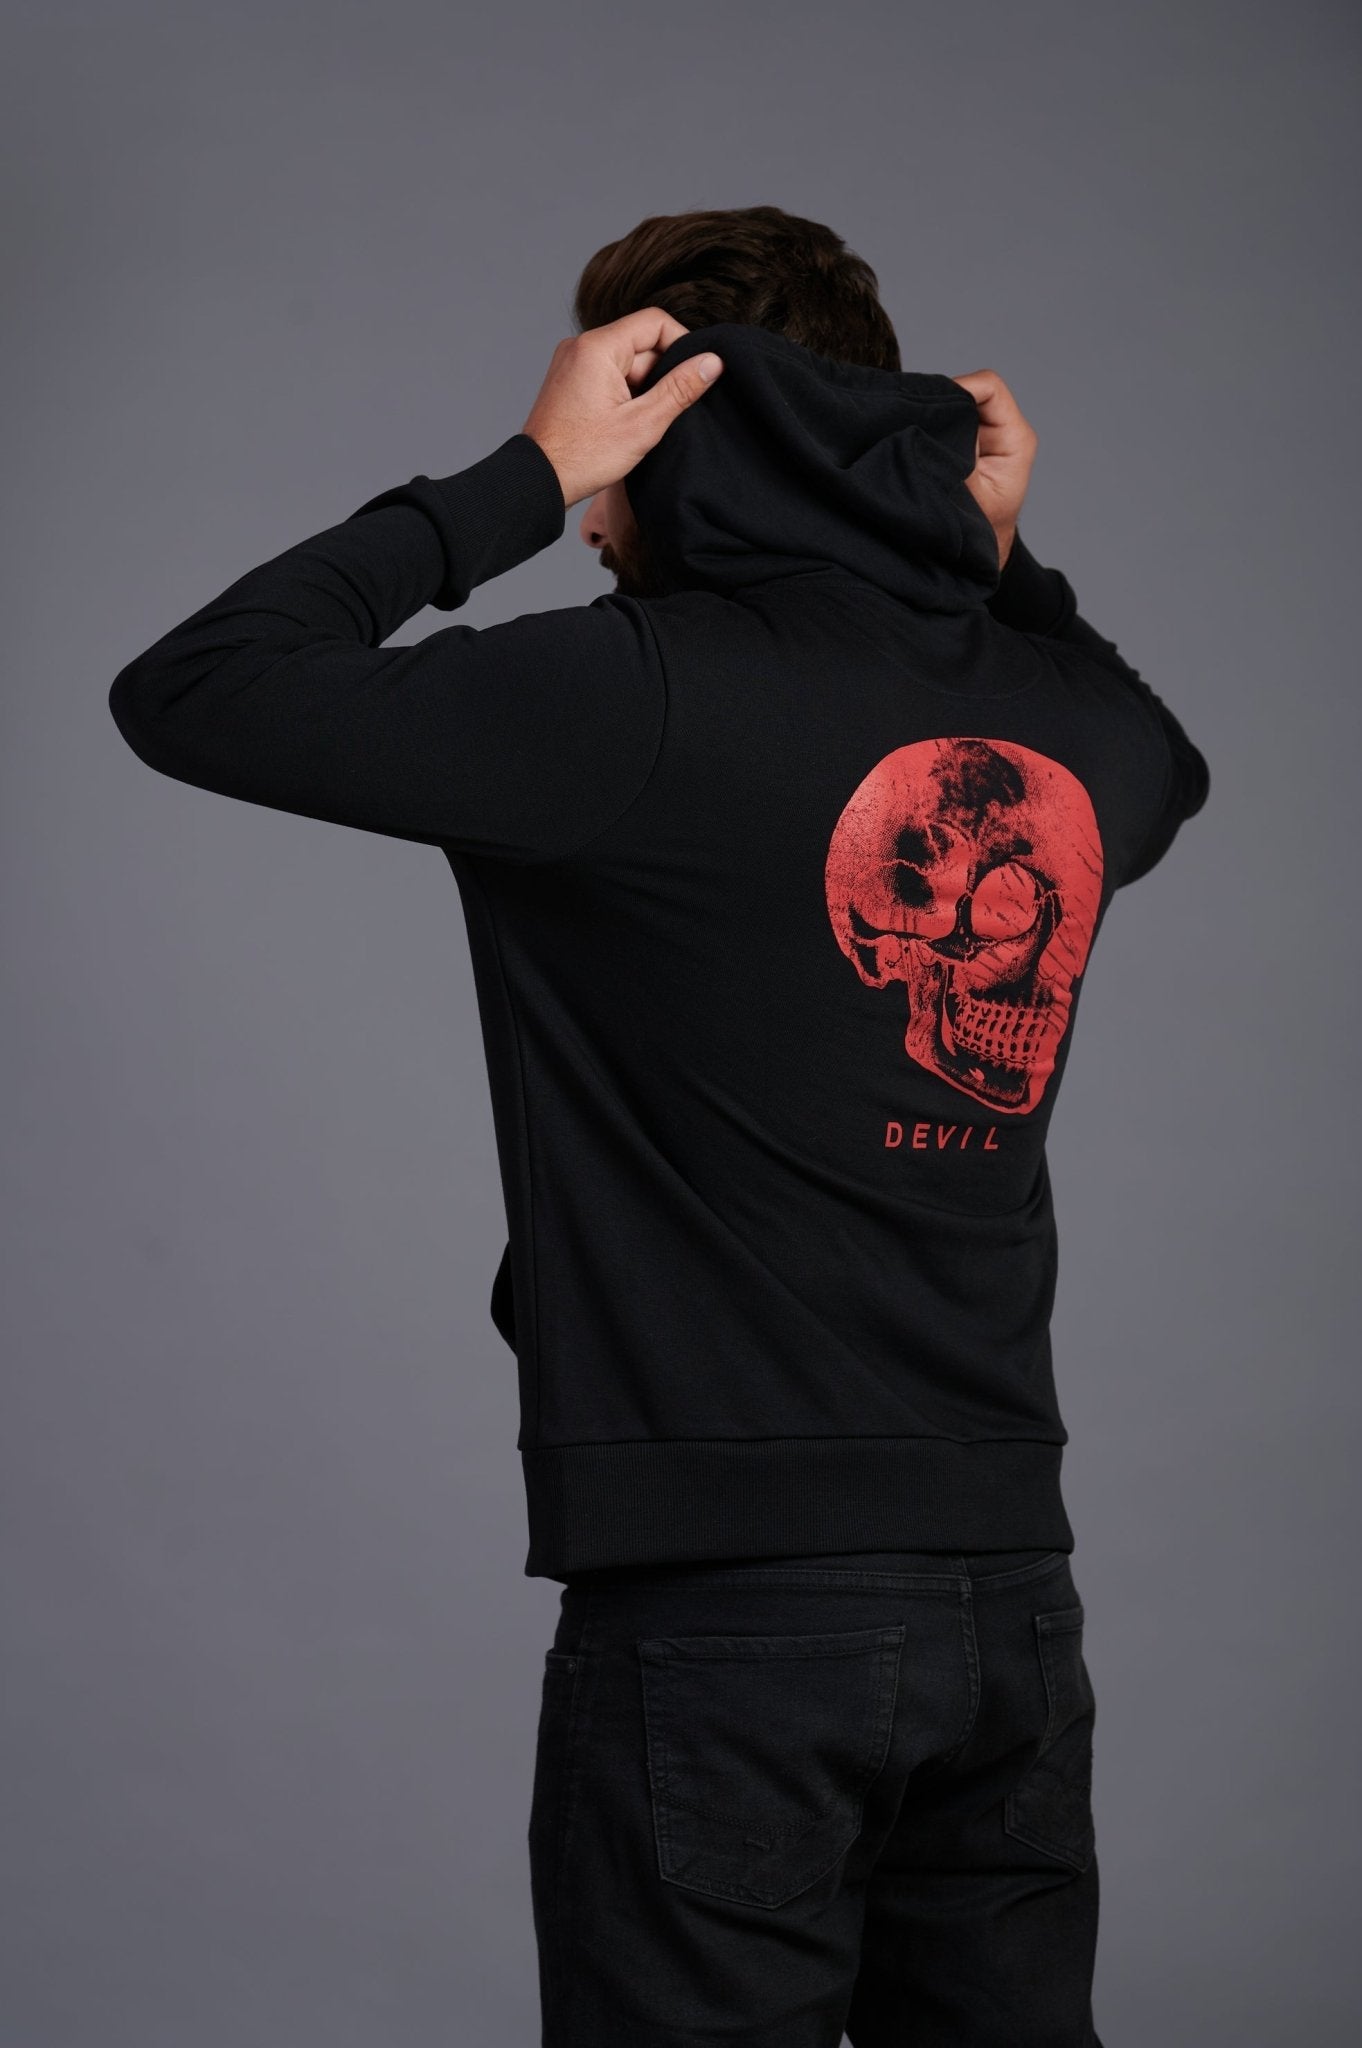 Red Skull Printed Black Zipper Hoodie for Men - Go Devil